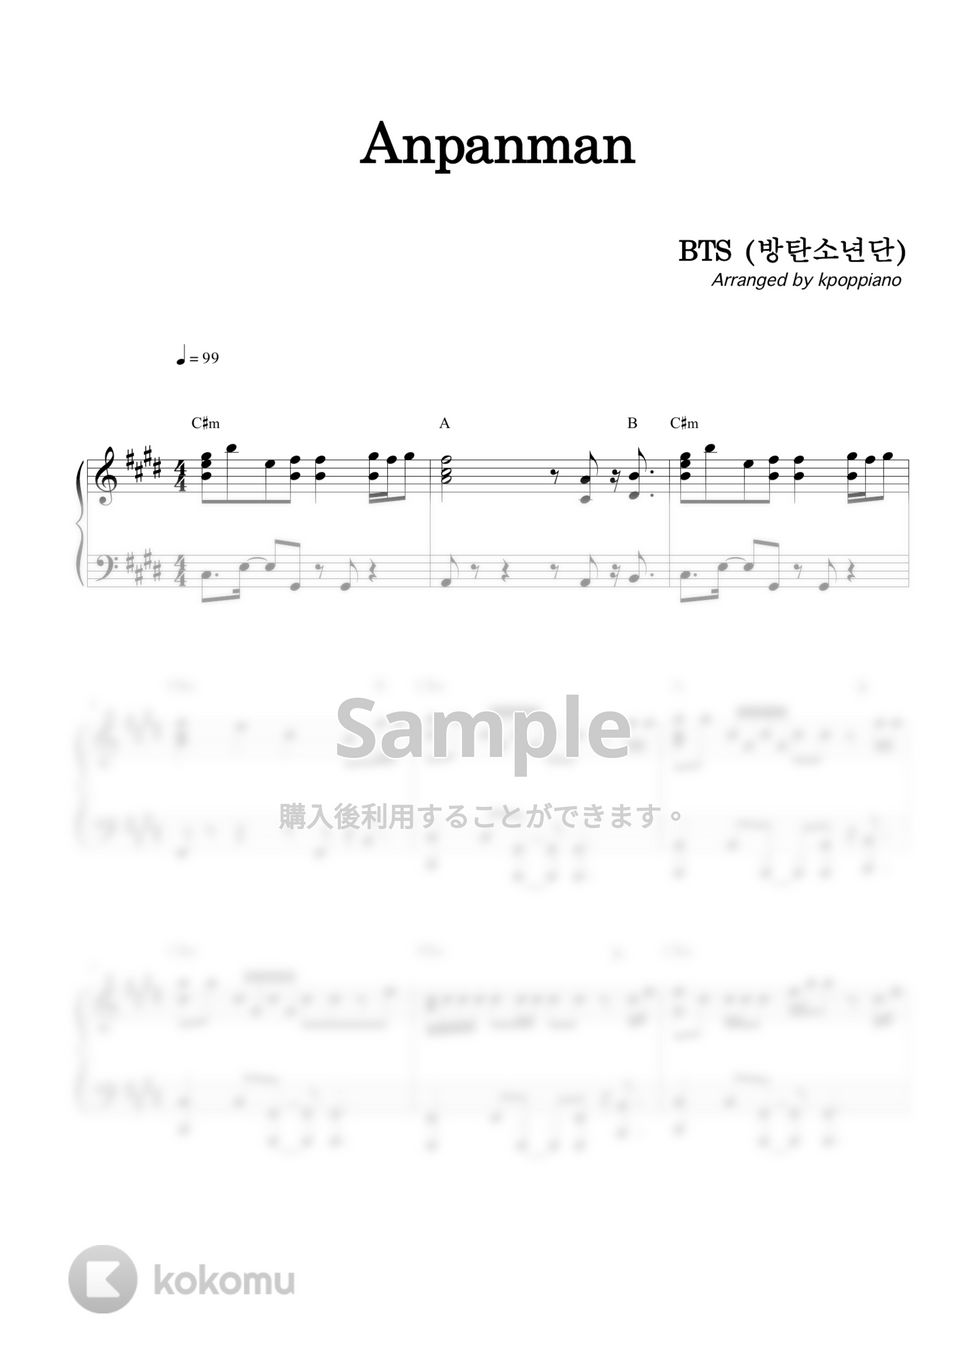 防弾少年団 (BTS) - Anpanman by KPOP PIANO